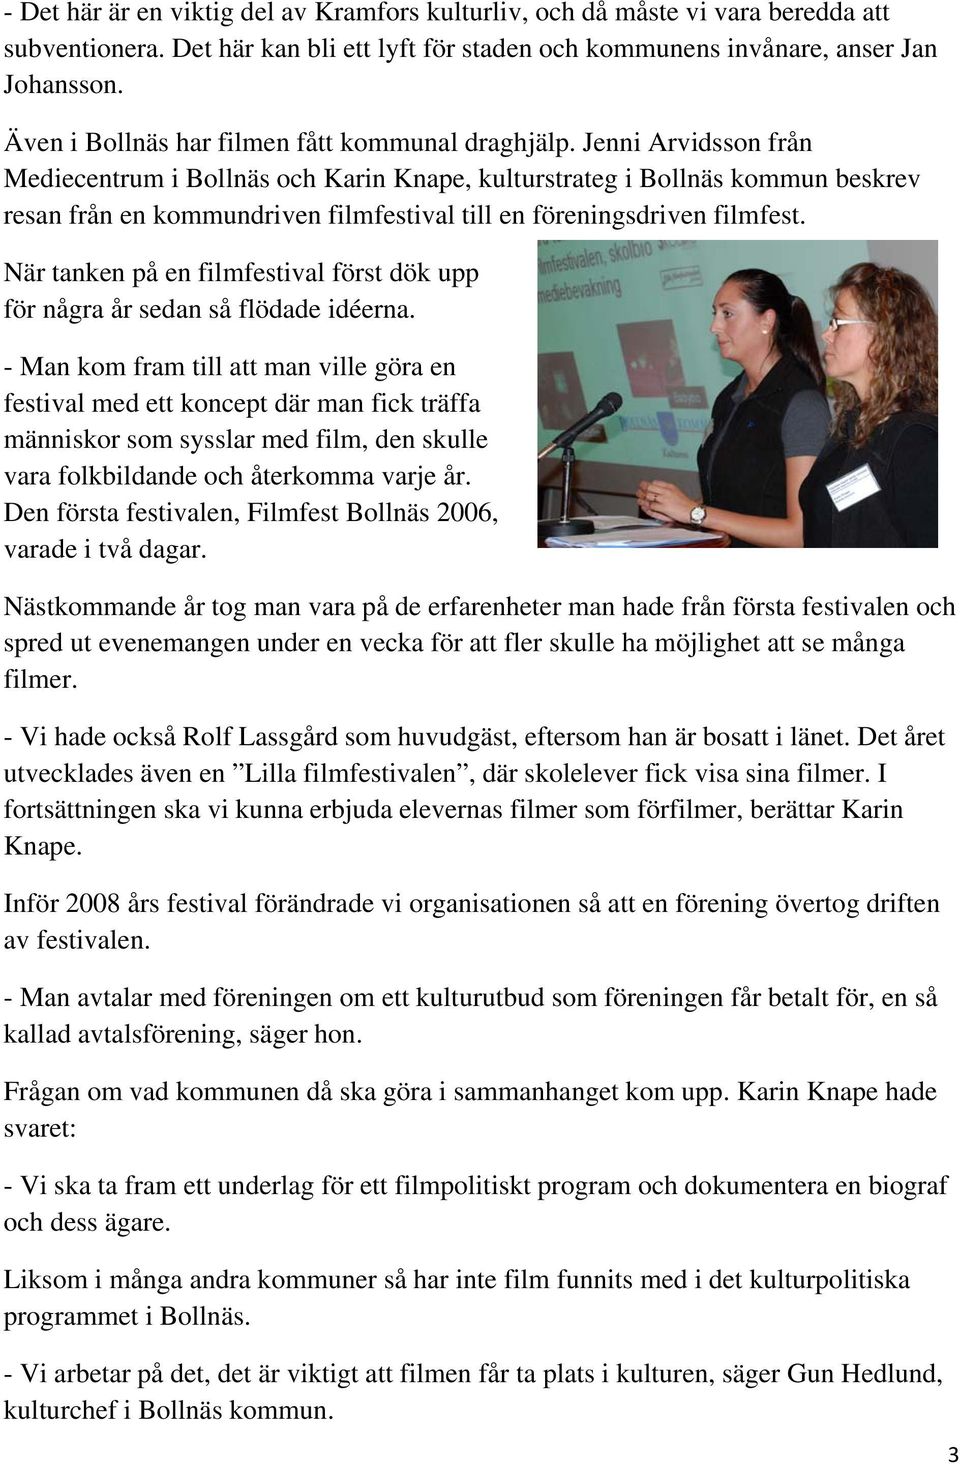 Jenni Arvidsson från Mediecentrum i Bollnäs och Karin Knape, kulturstrateg i Bollnäs kommun beskrev resan från en kommundriven filmfestival till en föreningsdriven filmfest.